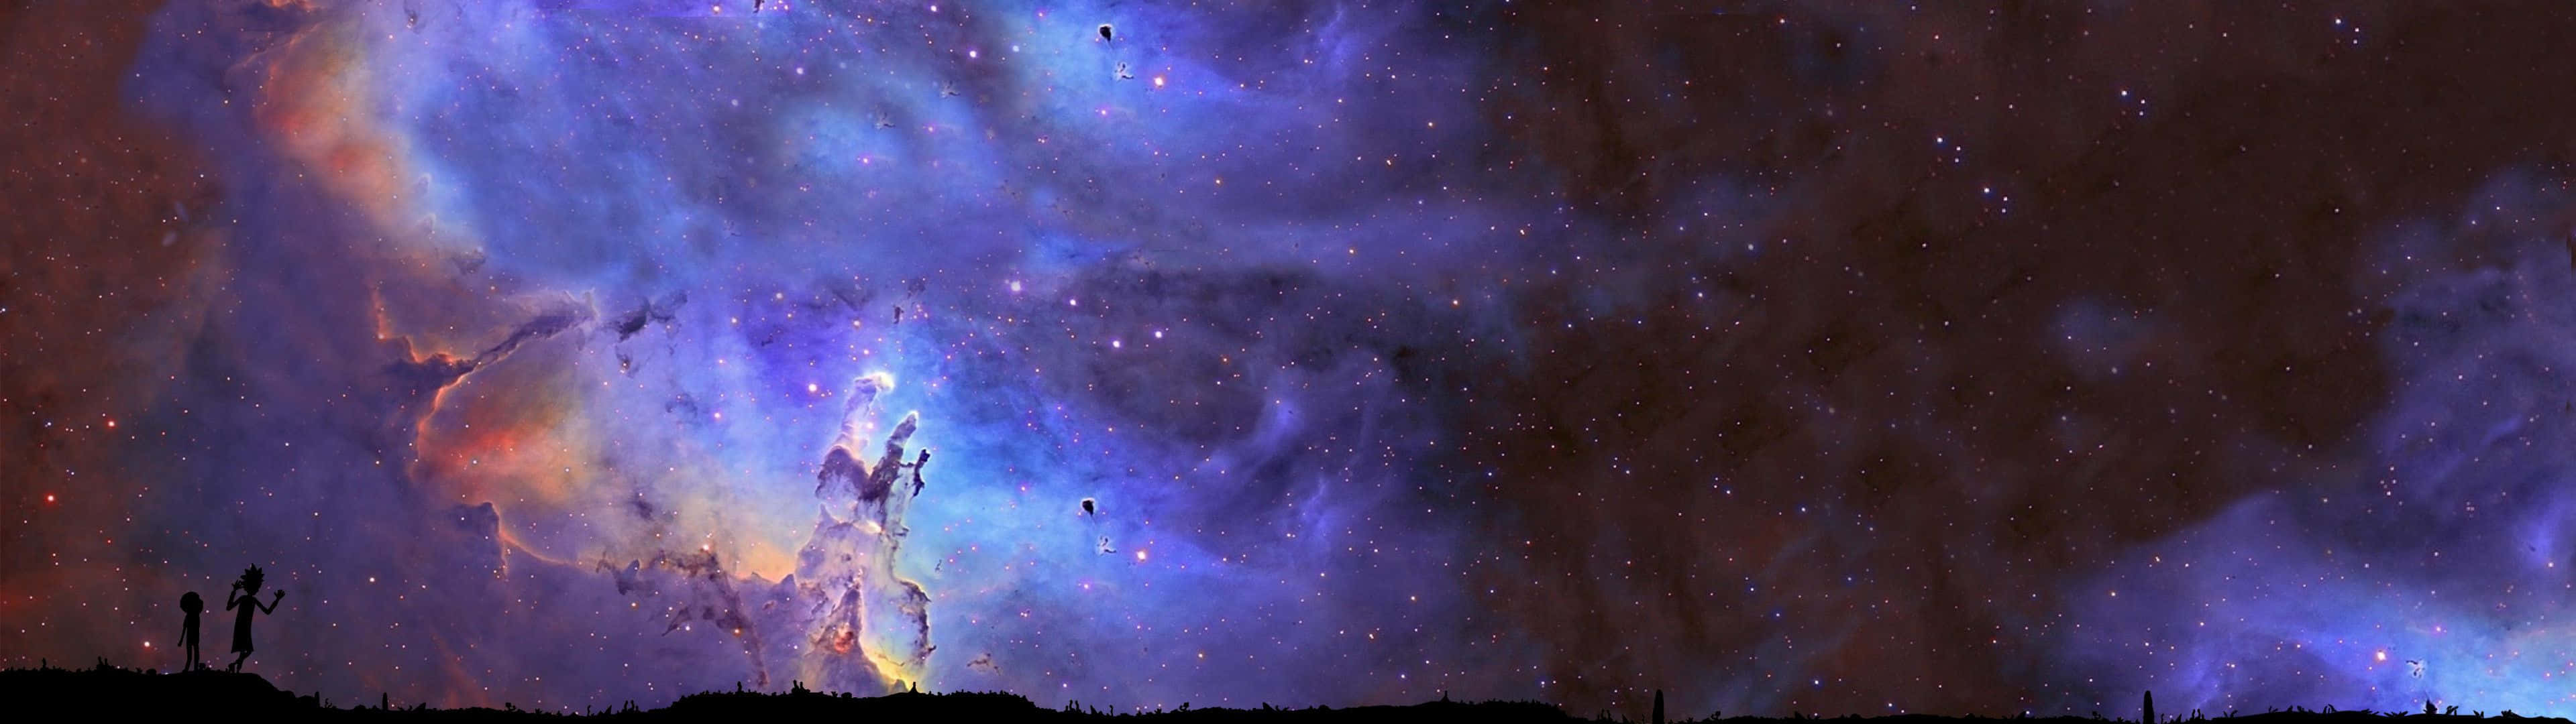 Einfaszinierendes Bild Von Galaxien In Einer Ätherischen Landschaft. Wallpaper